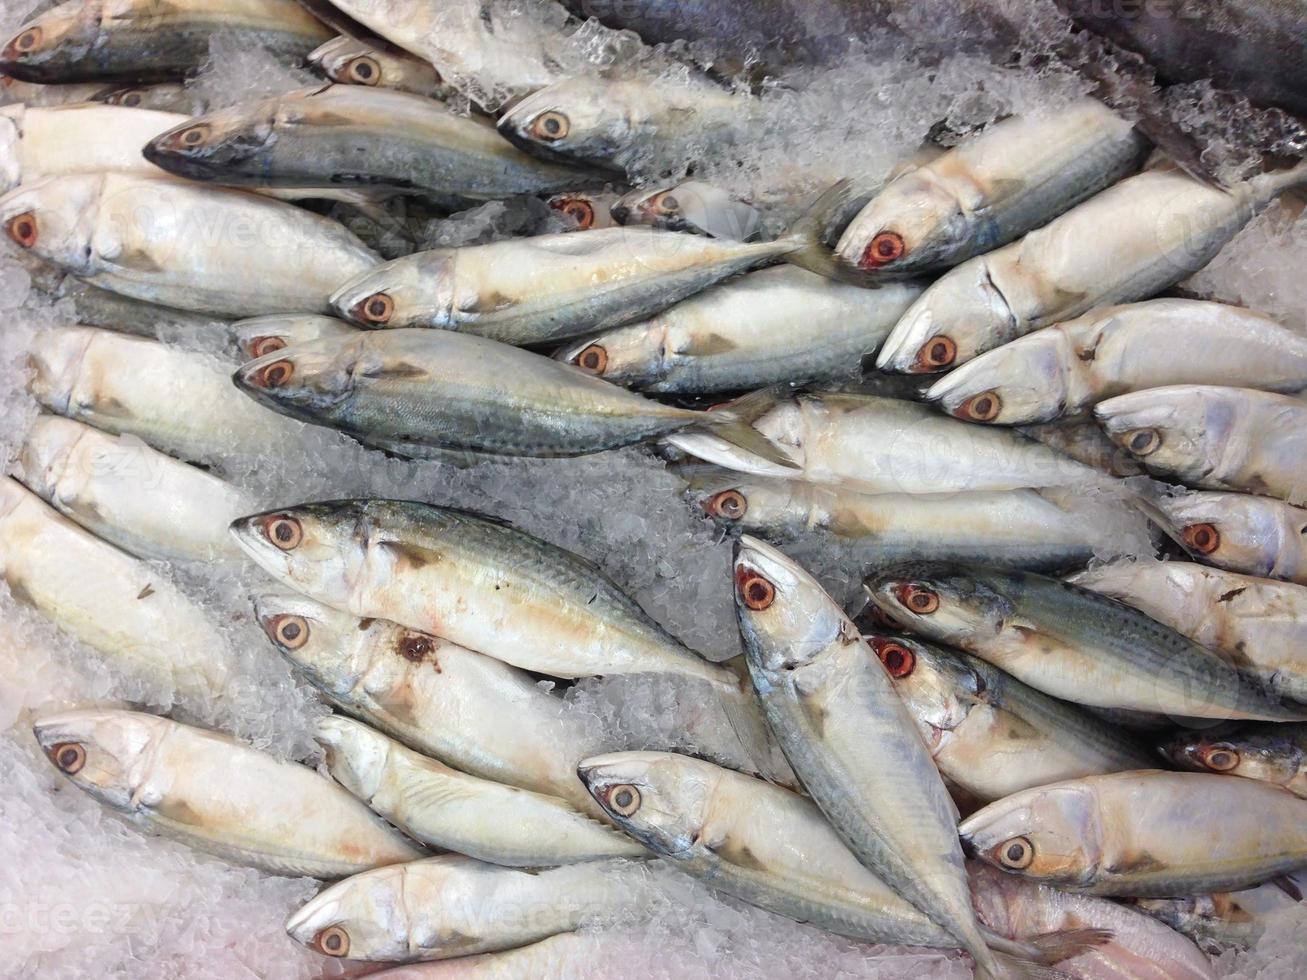 Many mackerel in the market photo